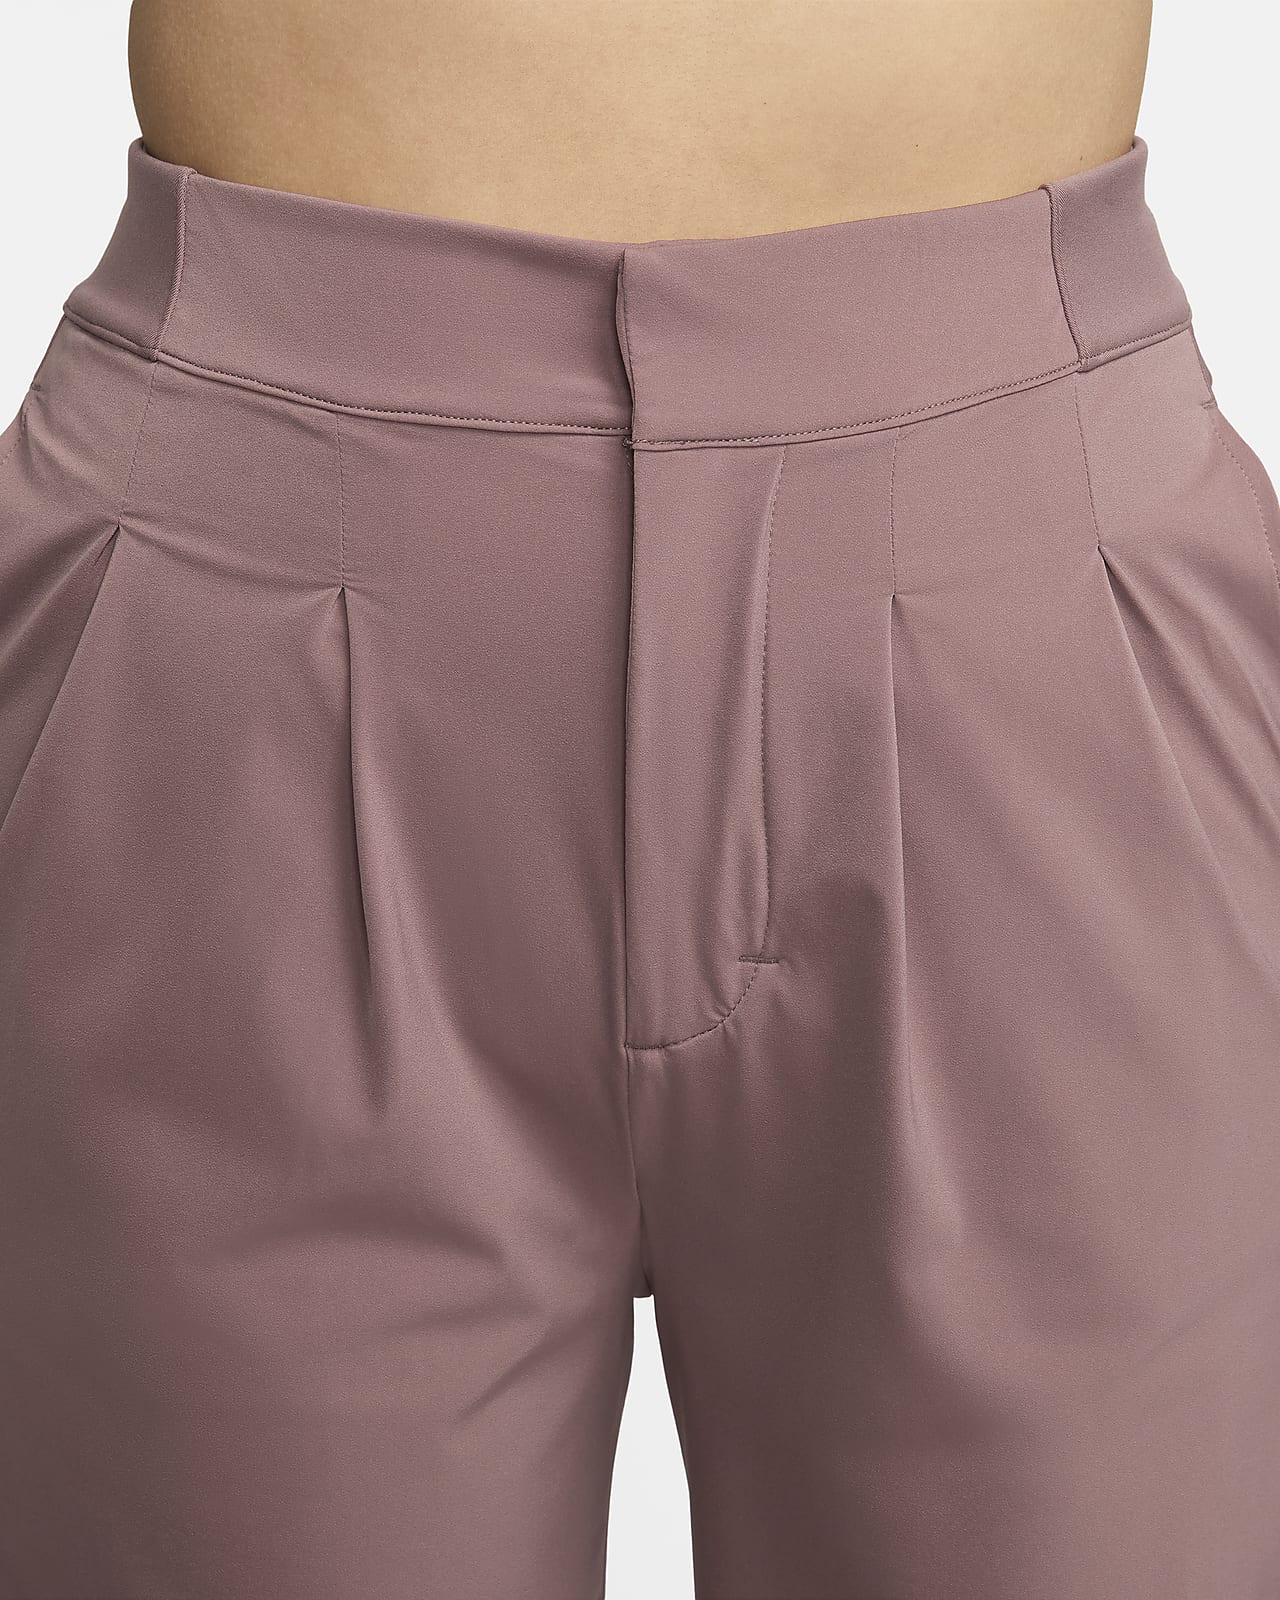 Nike Bliss Women's Dri-FIT Trousers.